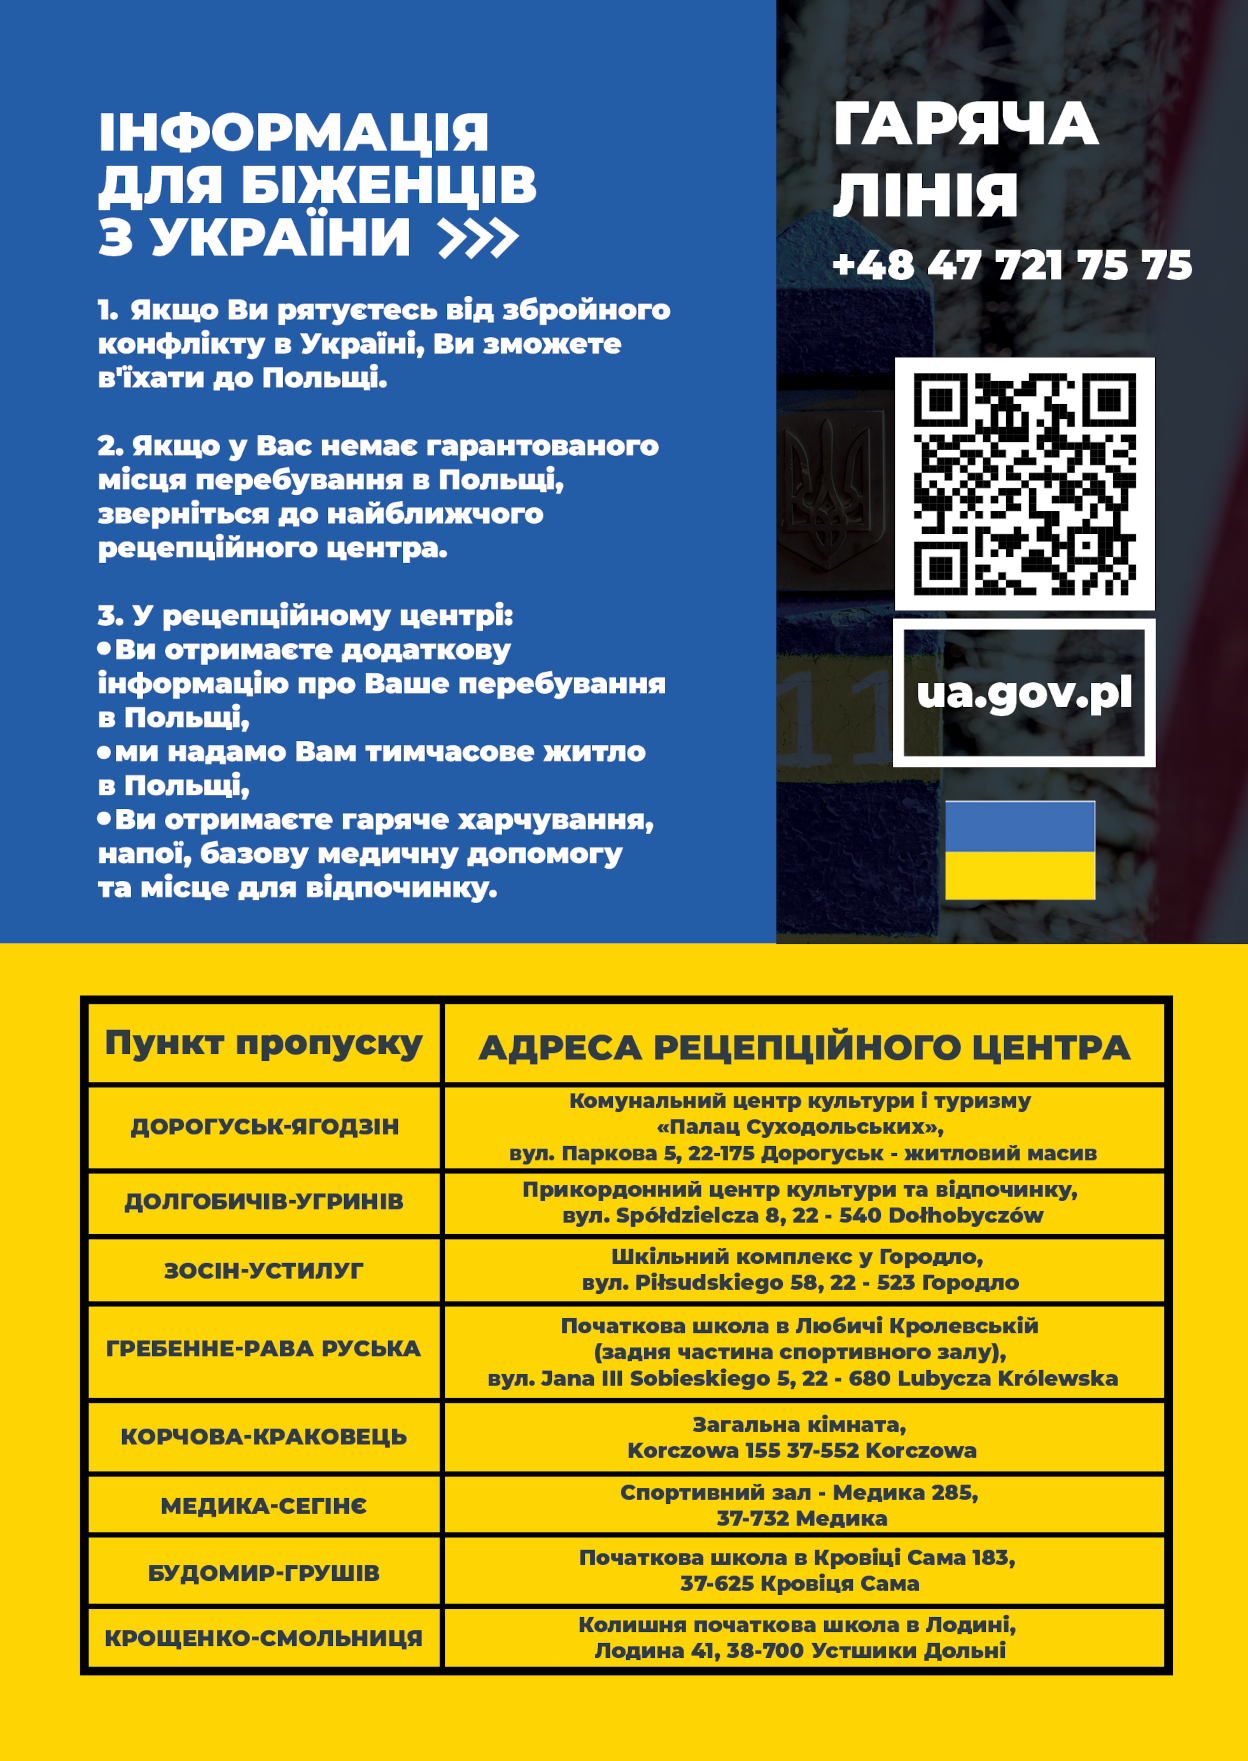 załącznik 2 informacja w formie plakatu w języku ukraińskim